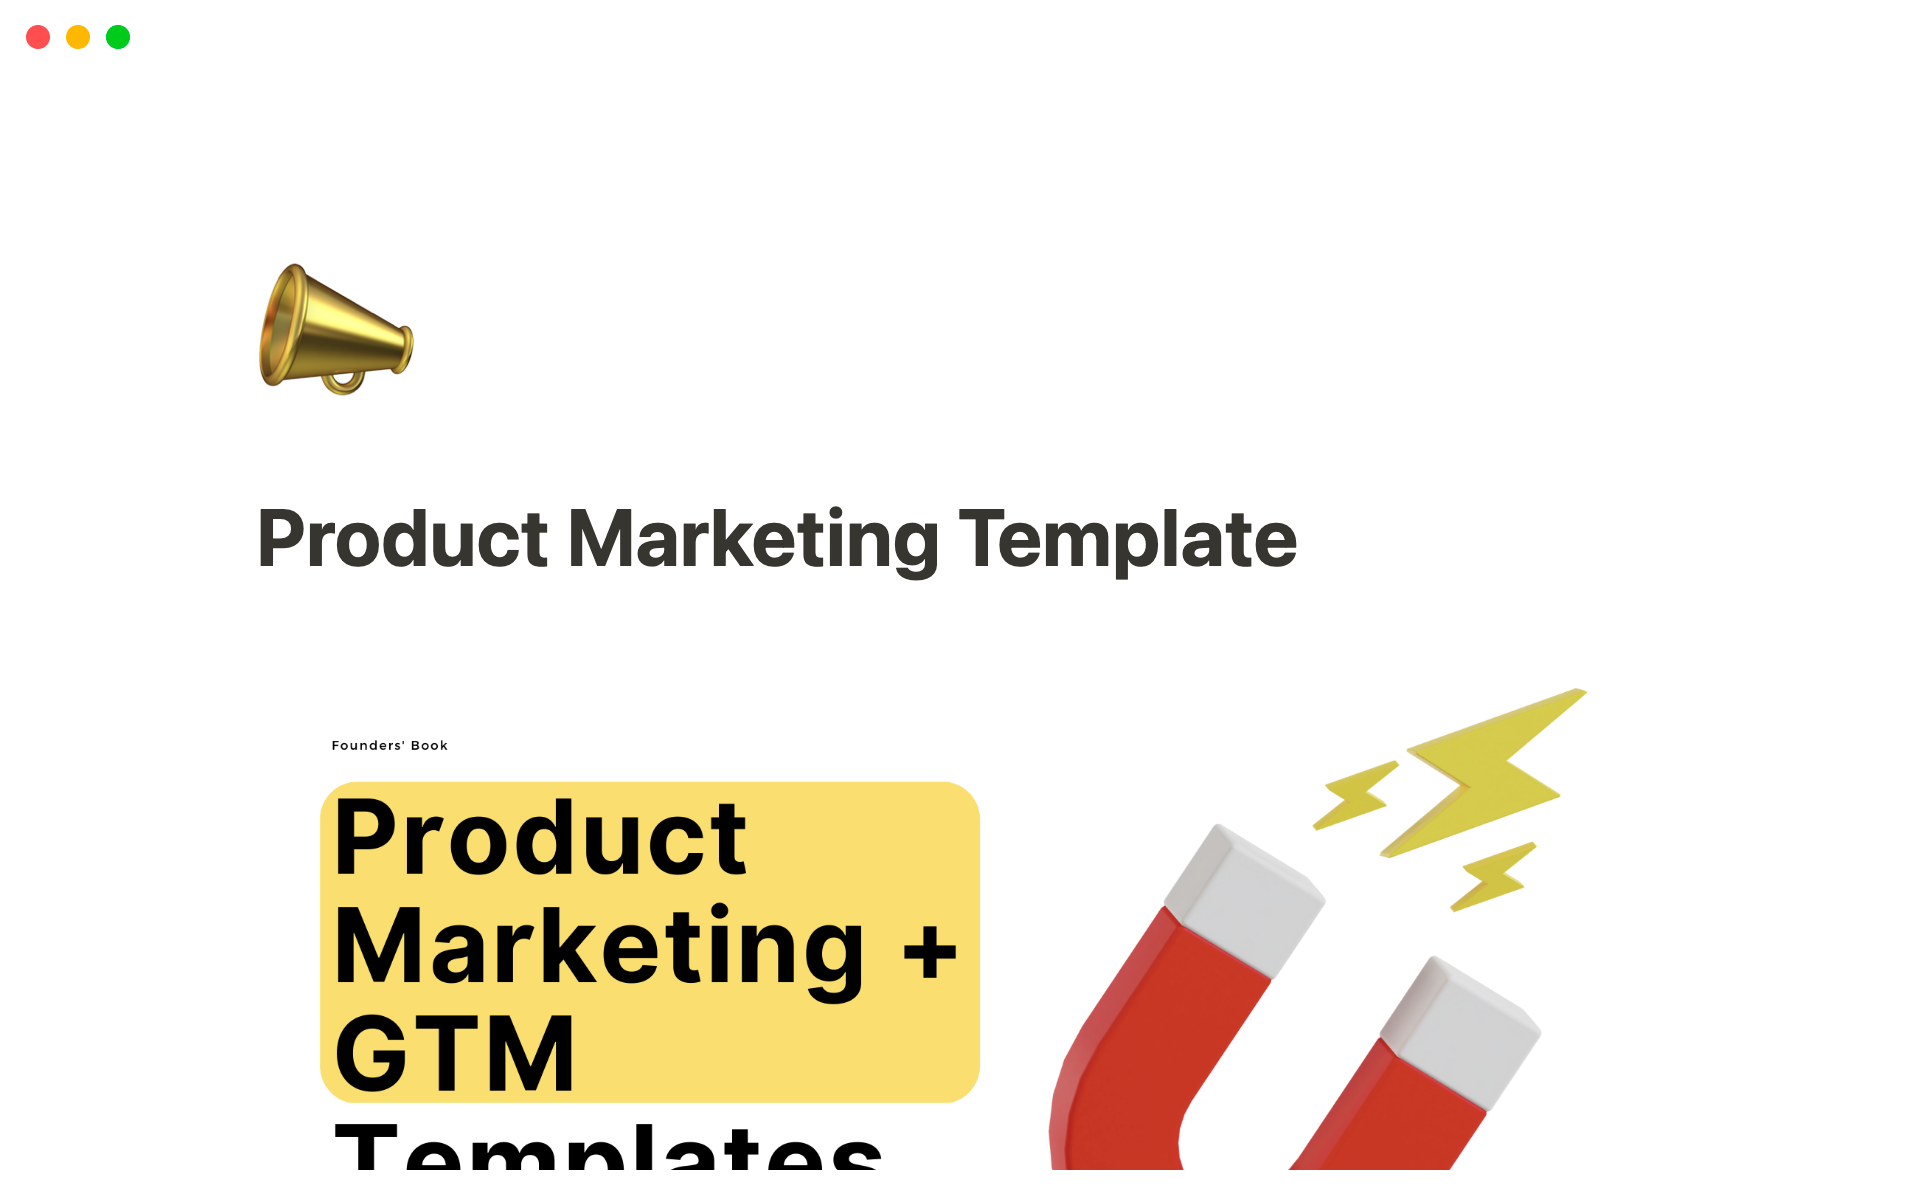 Aperçu du modèle de Product Marketing + GTM Template